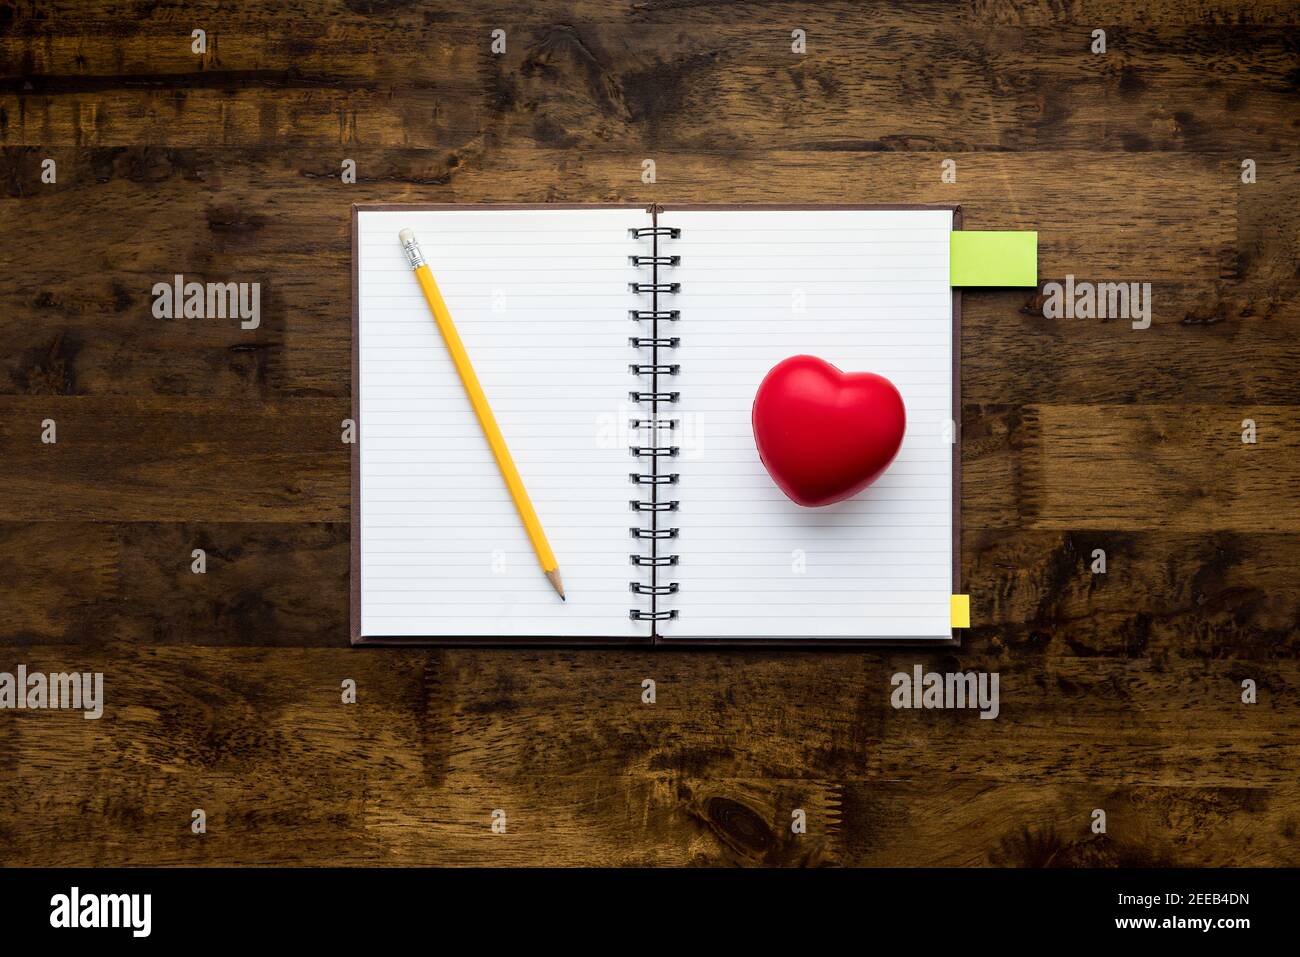 Taccuino vuoto aperto con matita e pallina a forma di cuore rosso sullo sfondo del tavolo in legno, vista dall'alto Foto Stock